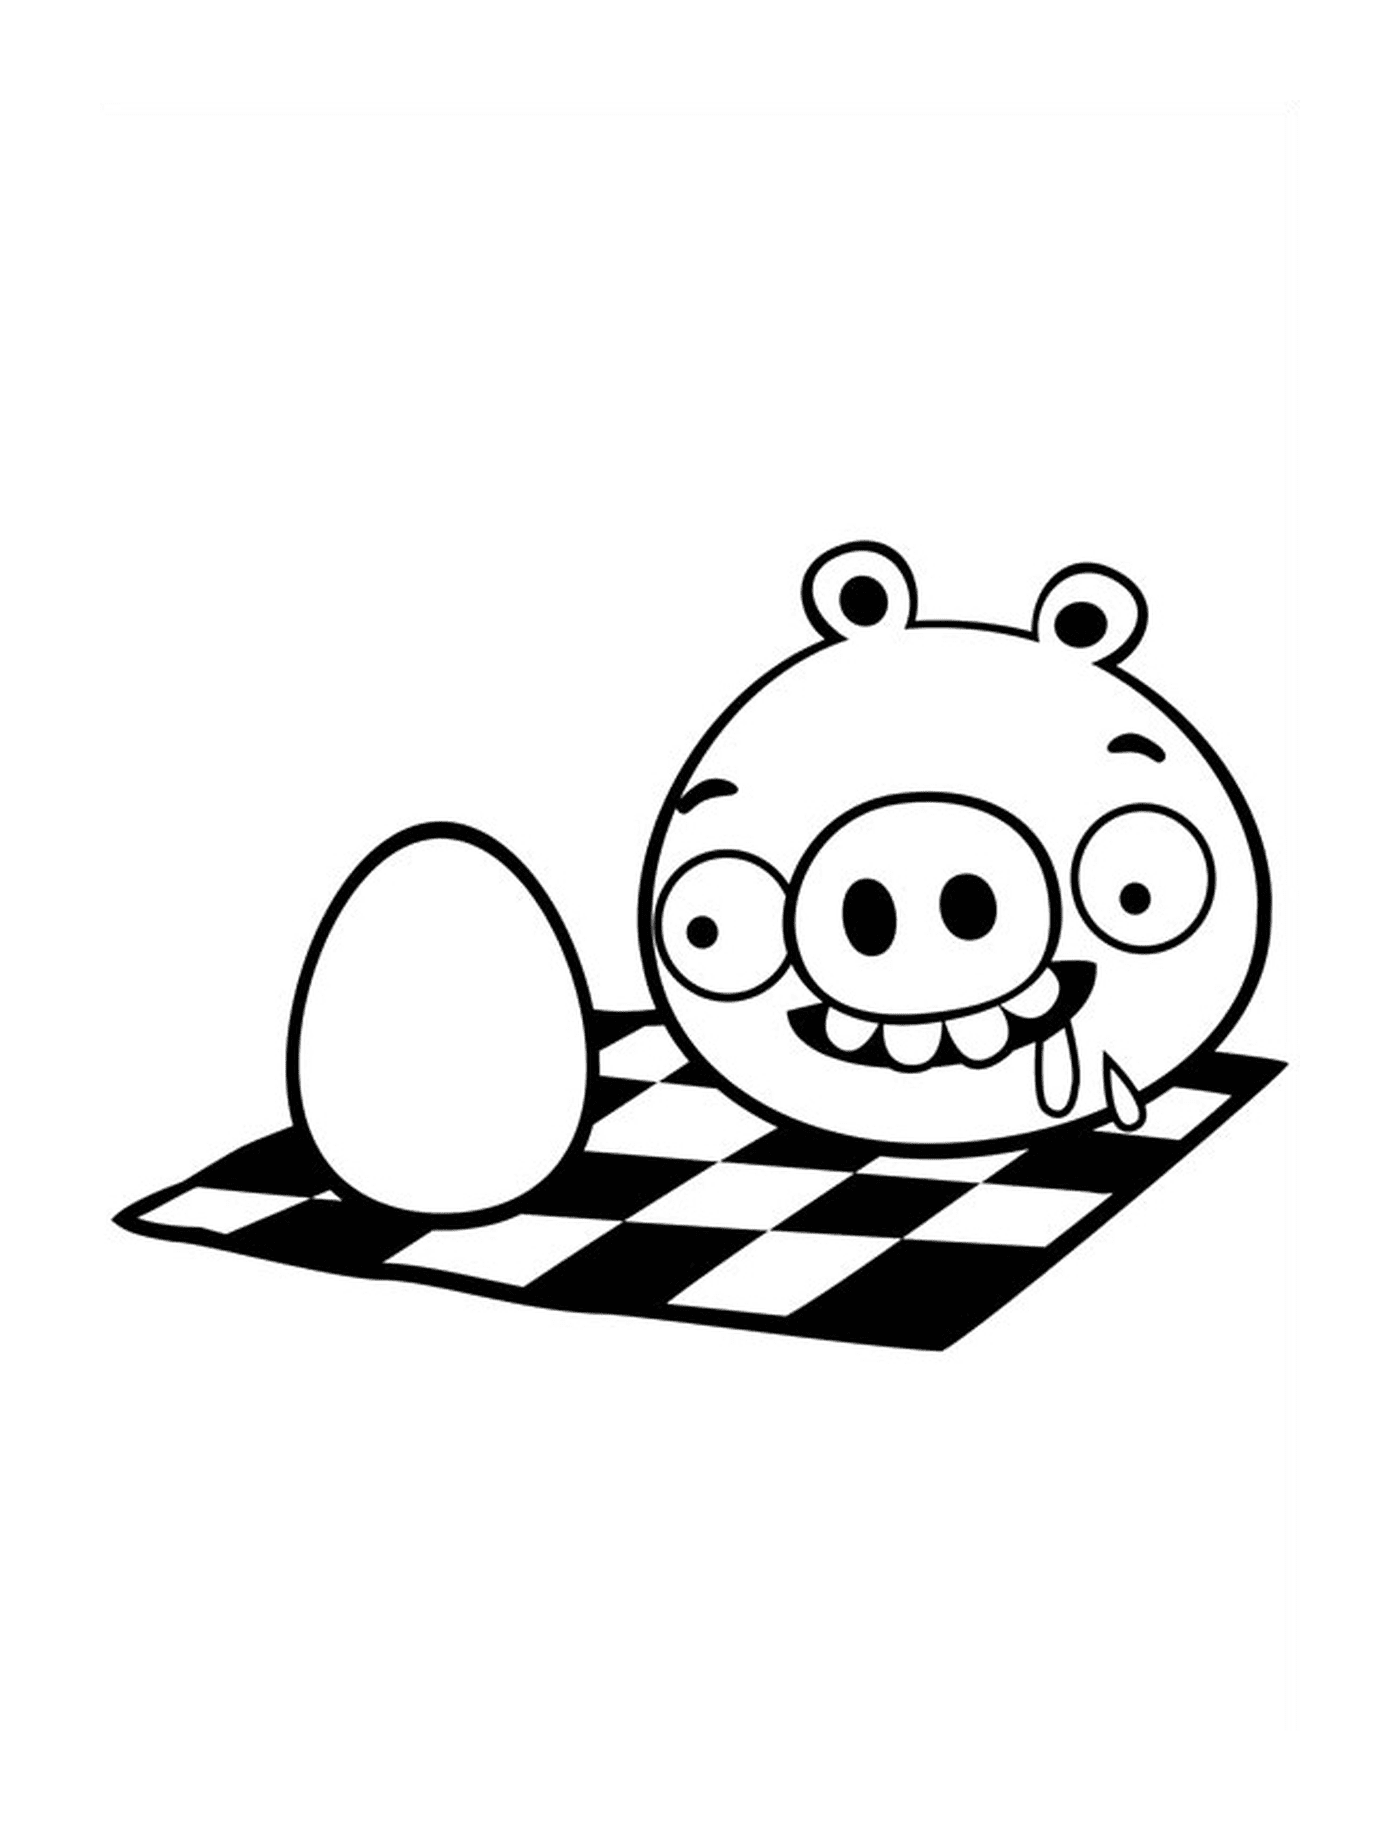  Свинья Злая Птица хочет съесть яйцо 